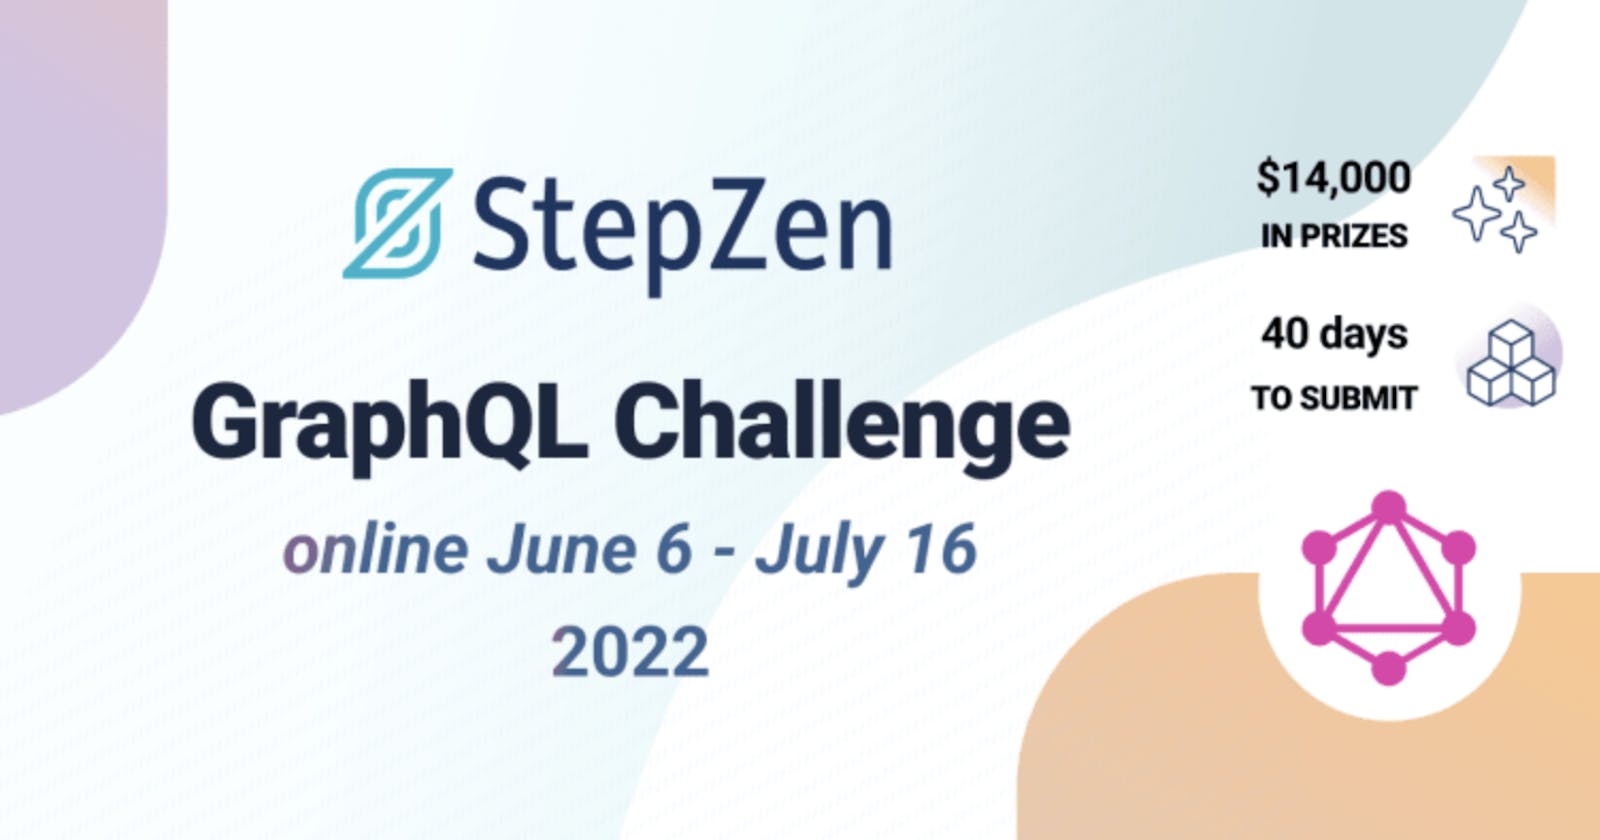 Announcing the StepZen GraphQL Challenge Hackathon